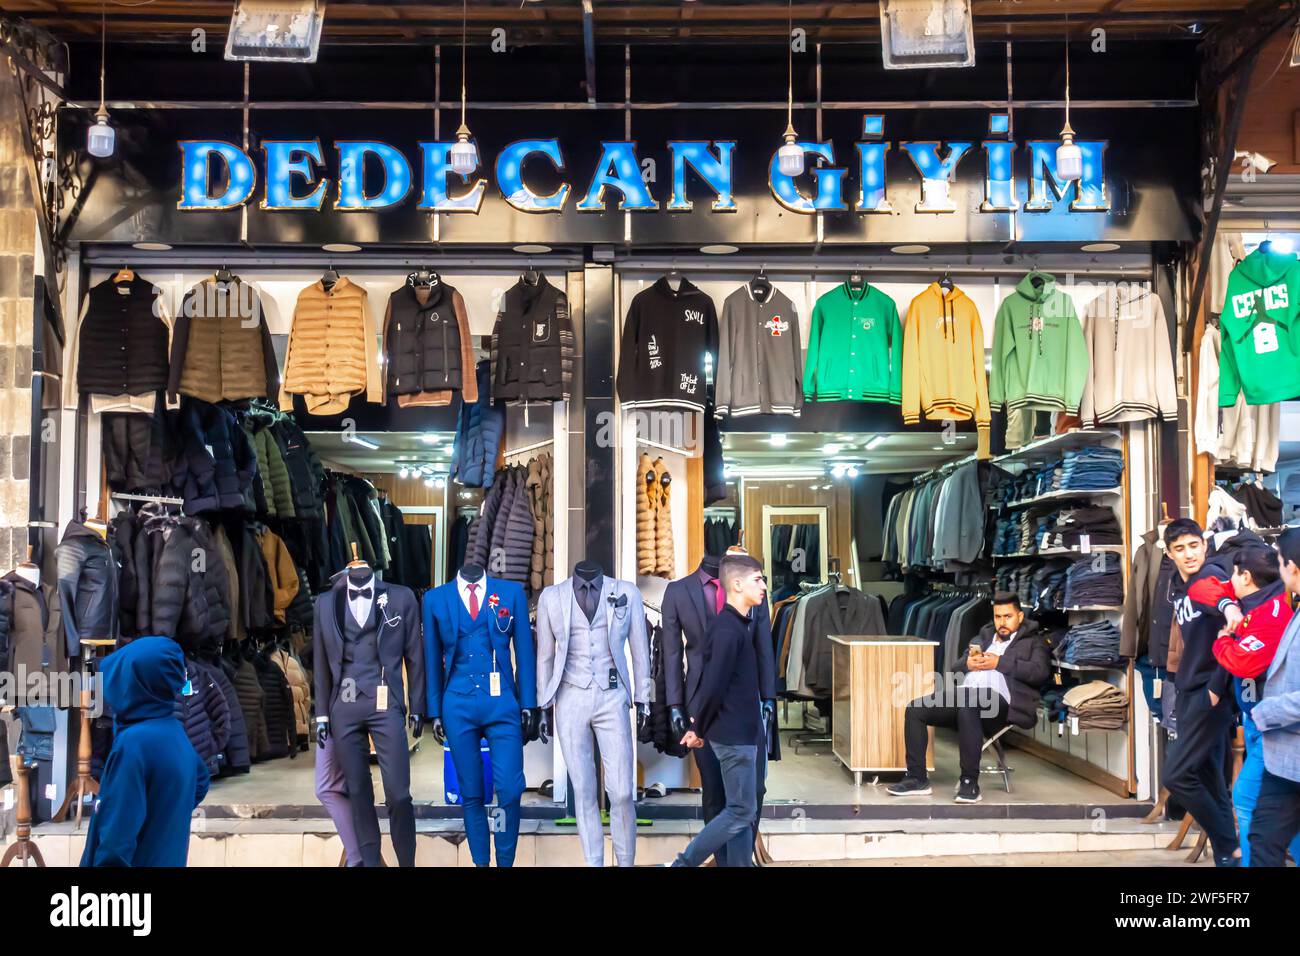 Dedecan Giyim, negozio di abbigliamento turco, negozio di abbigliamento da uomo, giacche da uomo, abbigliamento da uomo, abiti da uomo, abbigliamento da uomo, negozio di abbigliamento Sanliurfa Turkey Foto Stock